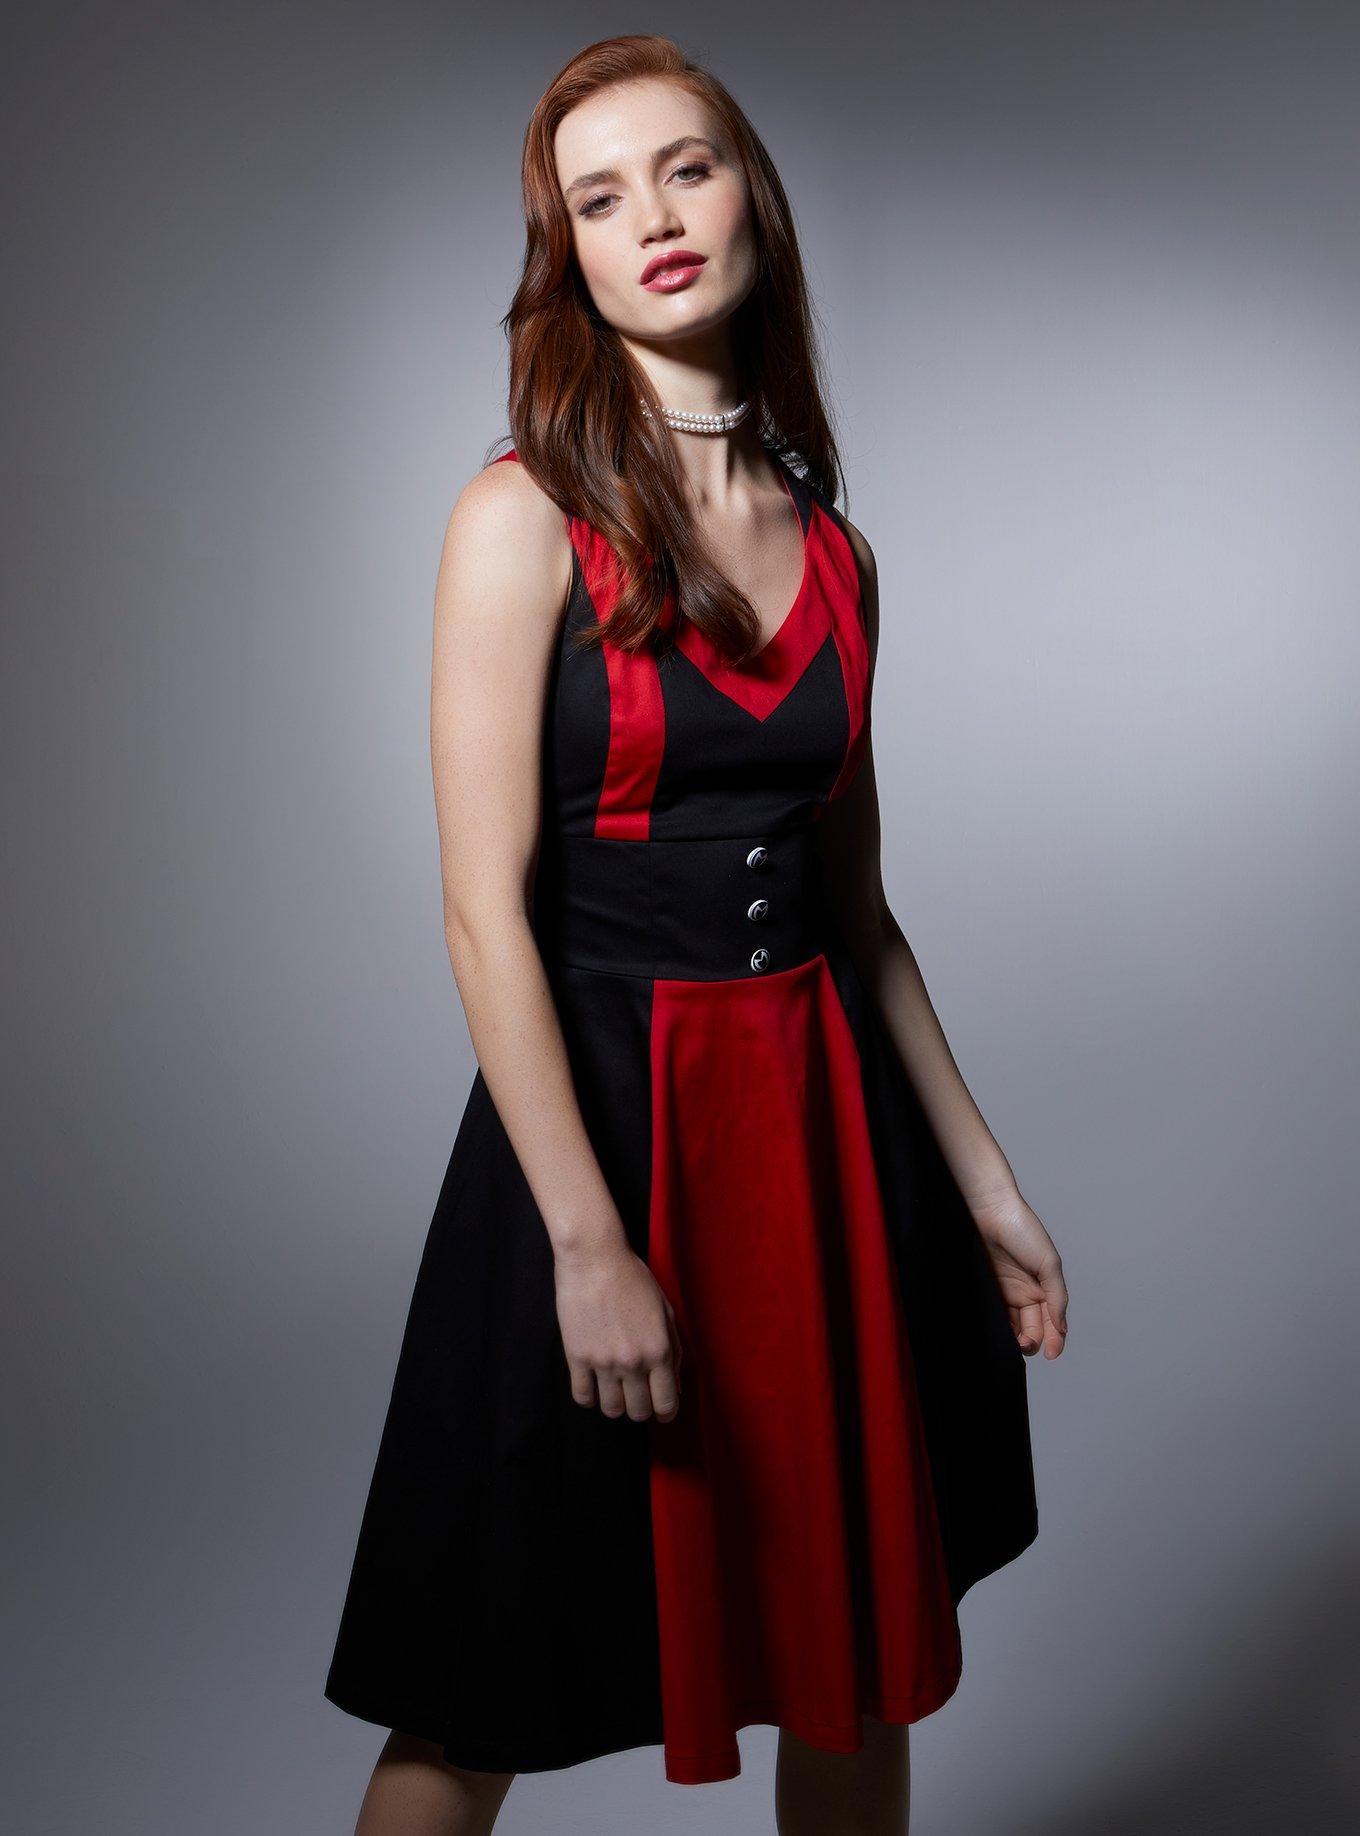 hottopic x @disneycruella - Her Universe Disney Cruella Red Dress